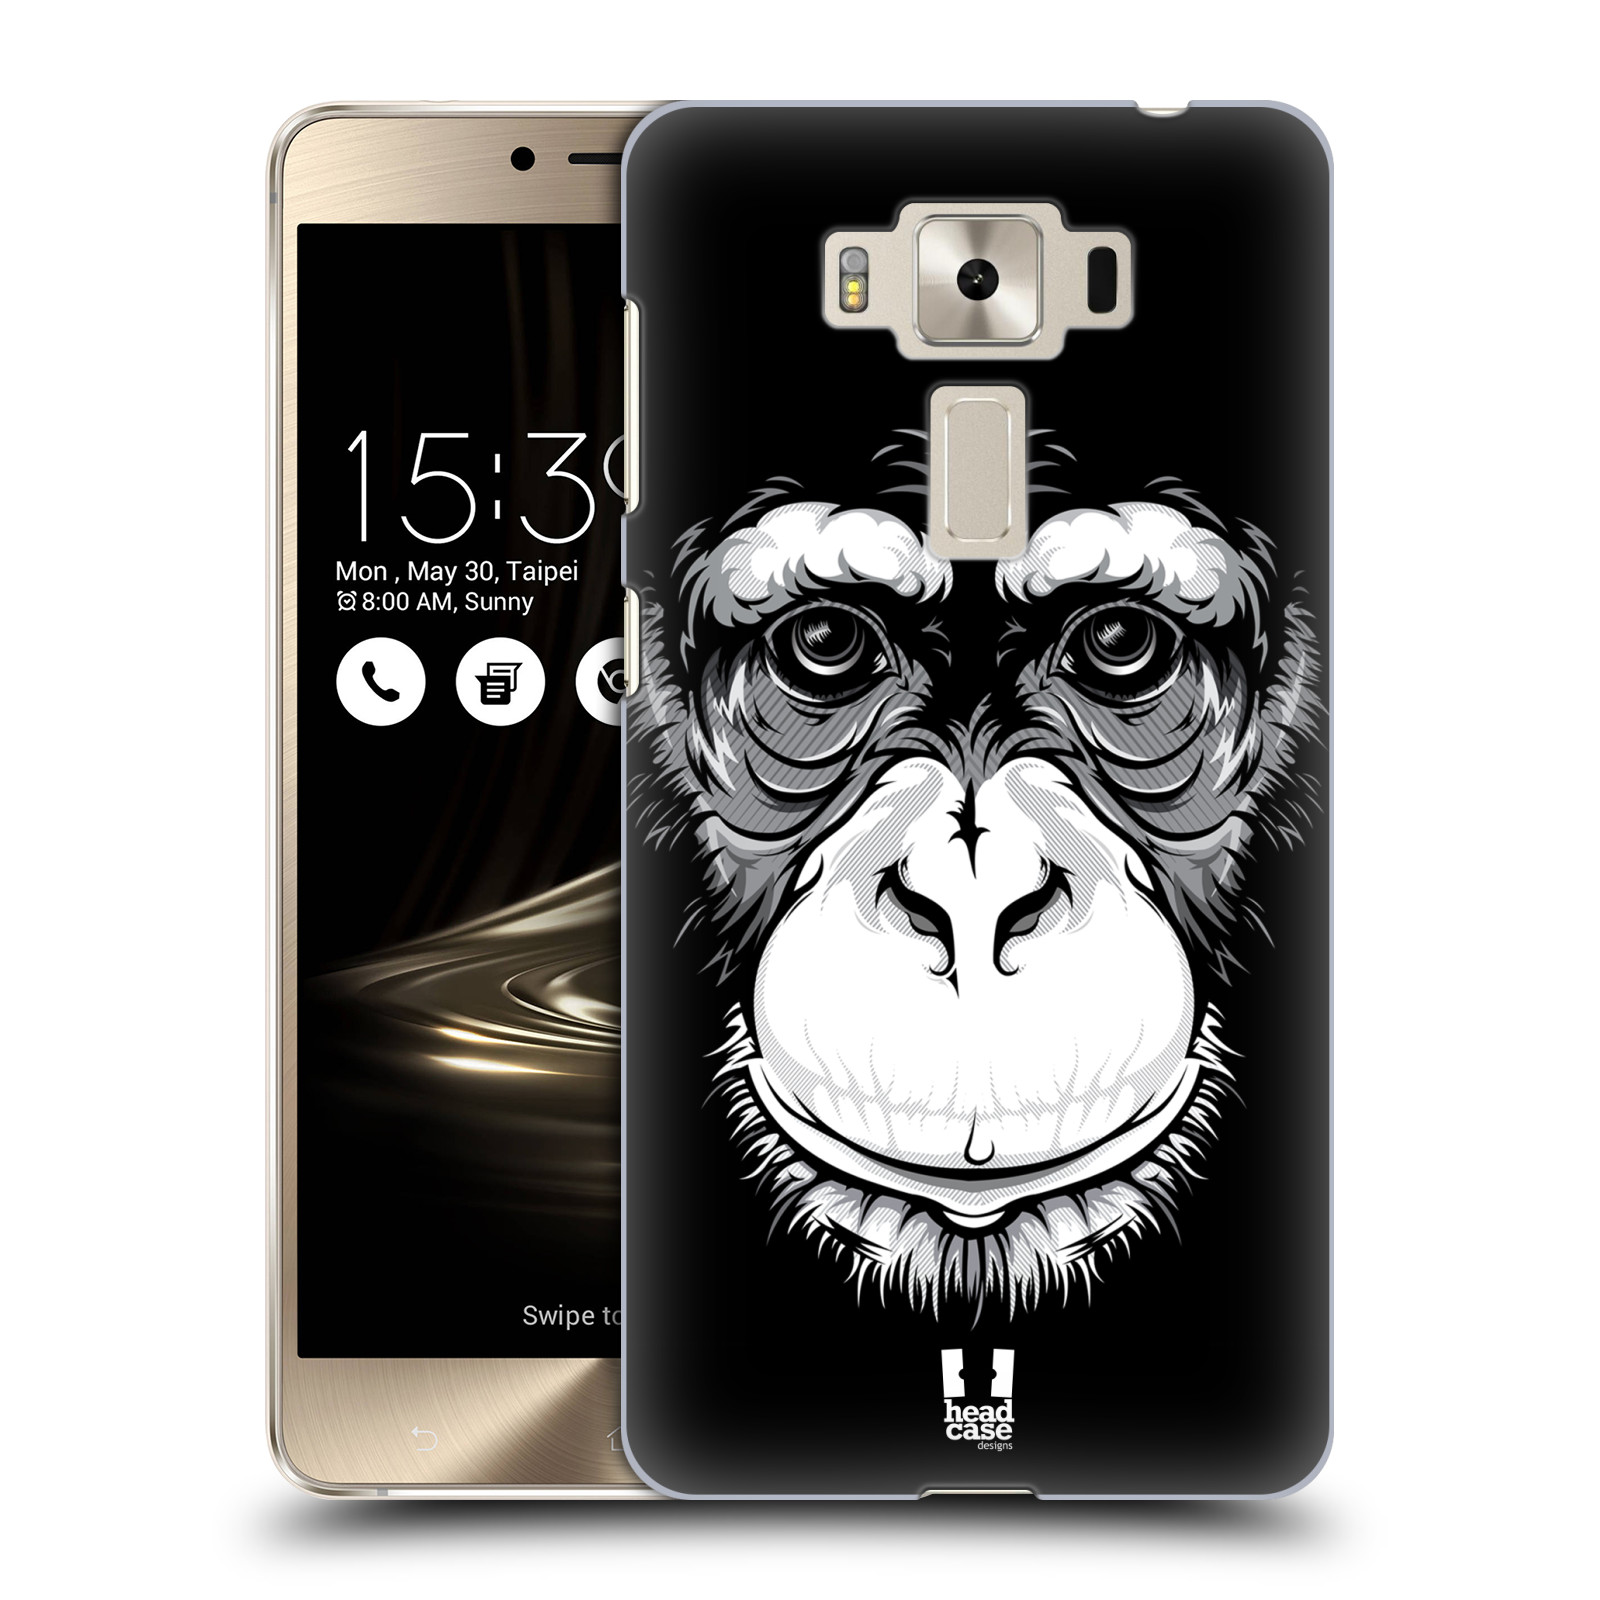 HEAD CASE plastový obal na mobil Asus Zenfone 3 DELUXE ZS550KL vzor Zvíře kreslená tvář šimpanz